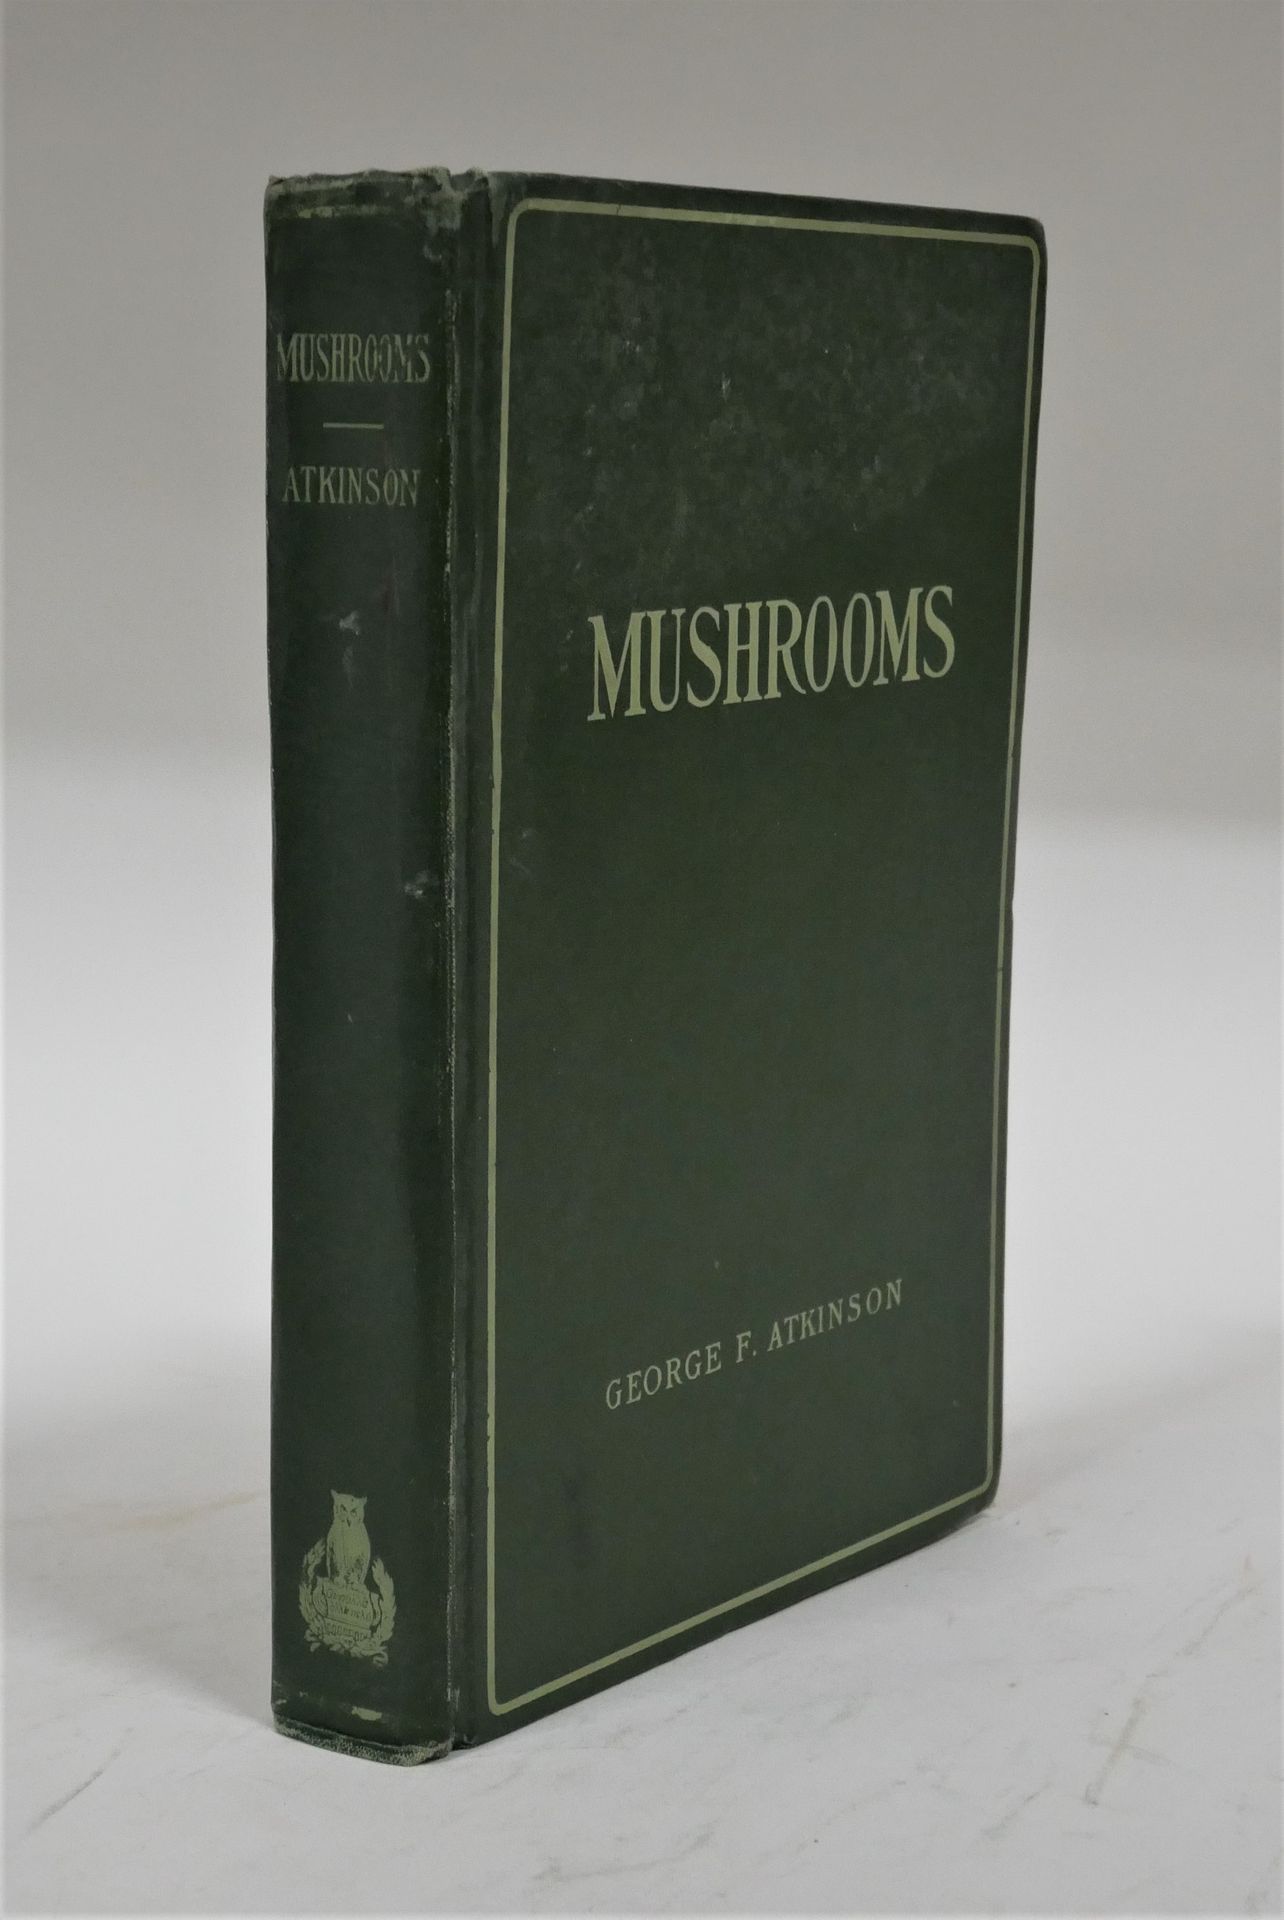 Null 乔治-弗朗西斯-阿特金森。

研究美国的Fungies蘑菇。

亨利-霍尔特公司，纽约，1903年，第2版，230页。